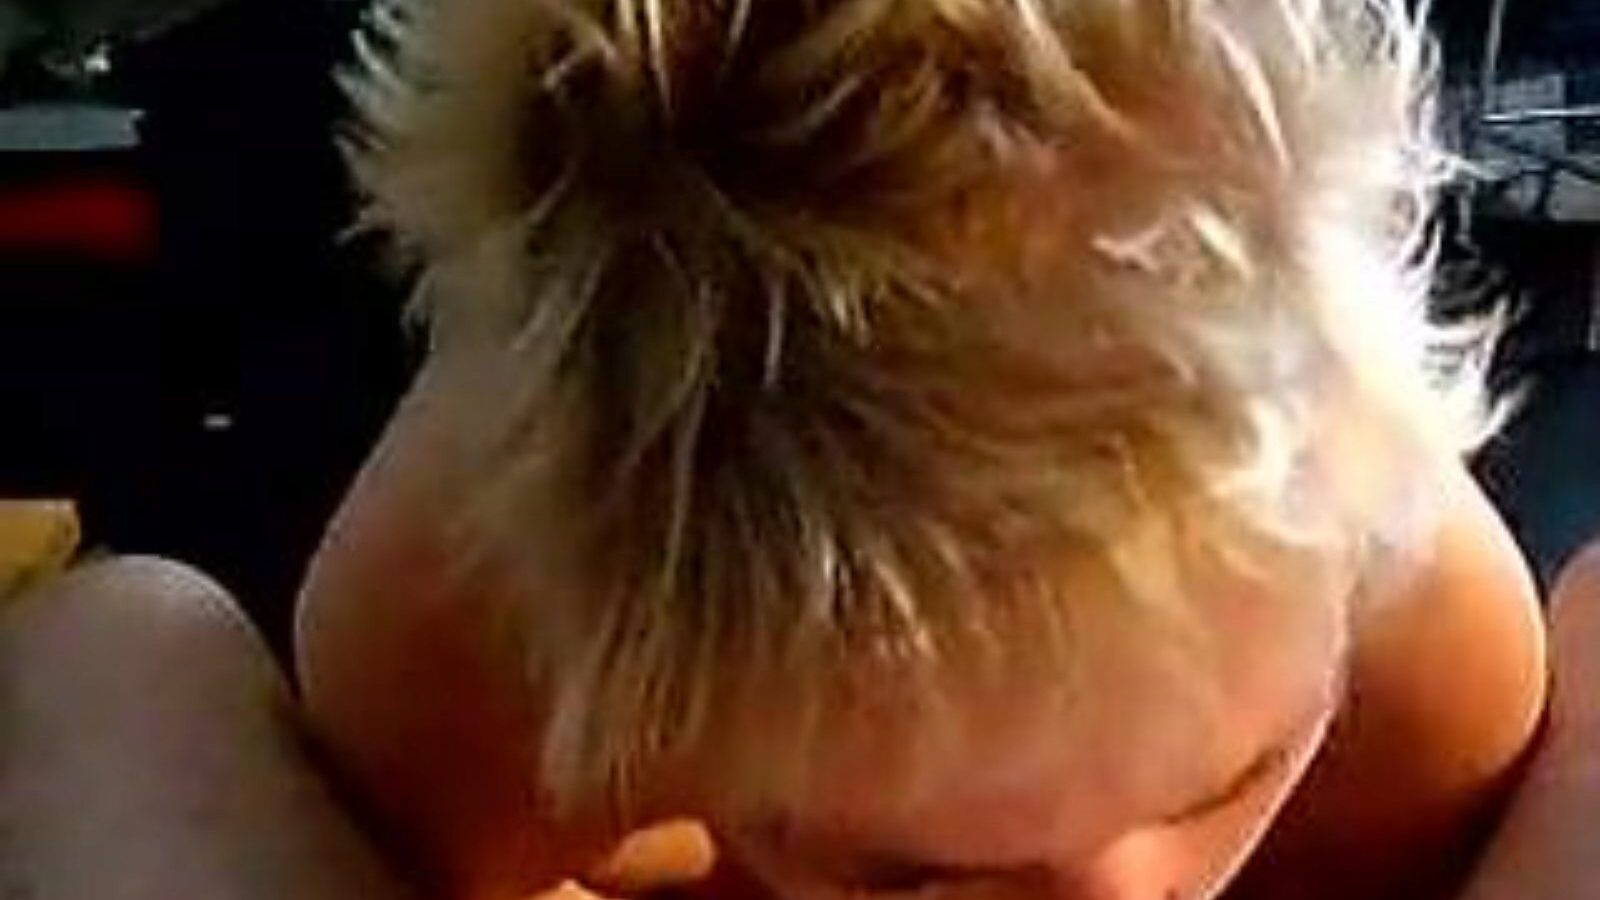 leuke dame: video porno casero y de viejas a6 - xhamster mira la película de leuke dame tube fuckfest gratis en xhamster, con la colección más candente de videos caseros holandeses de videos porno de chicas mayores y chupadores